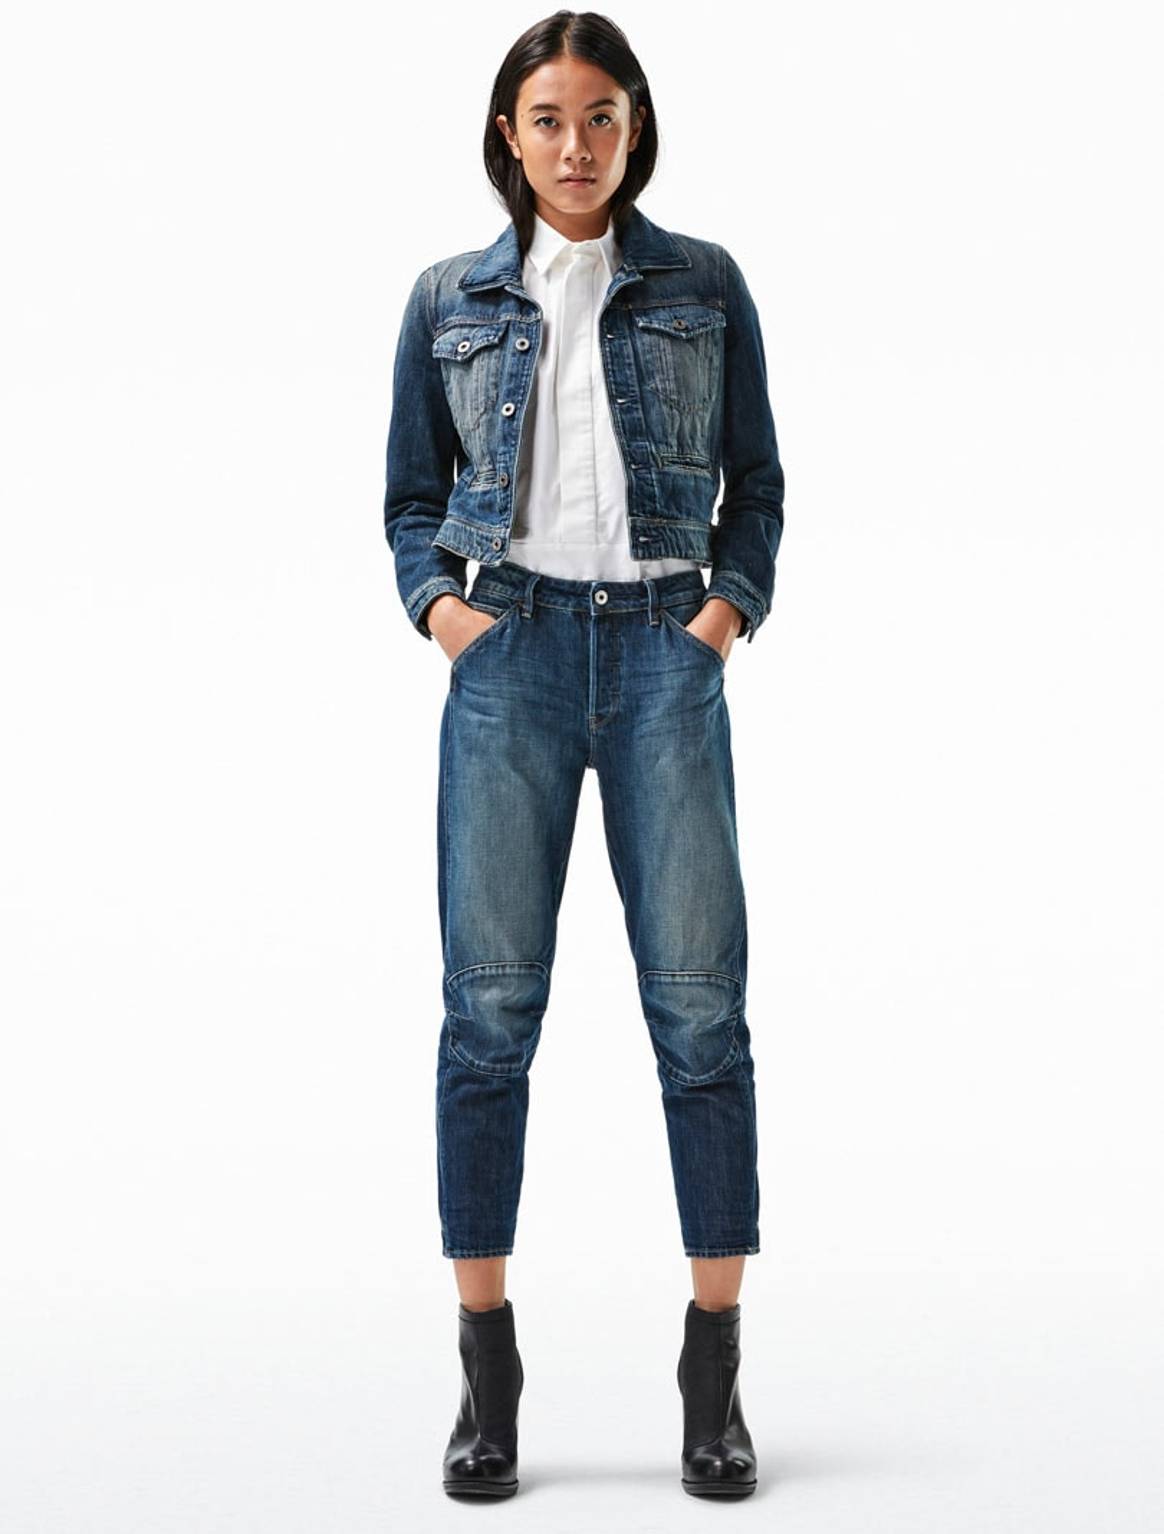 G-Star lanceert 'meest duurzame jeans ooit'